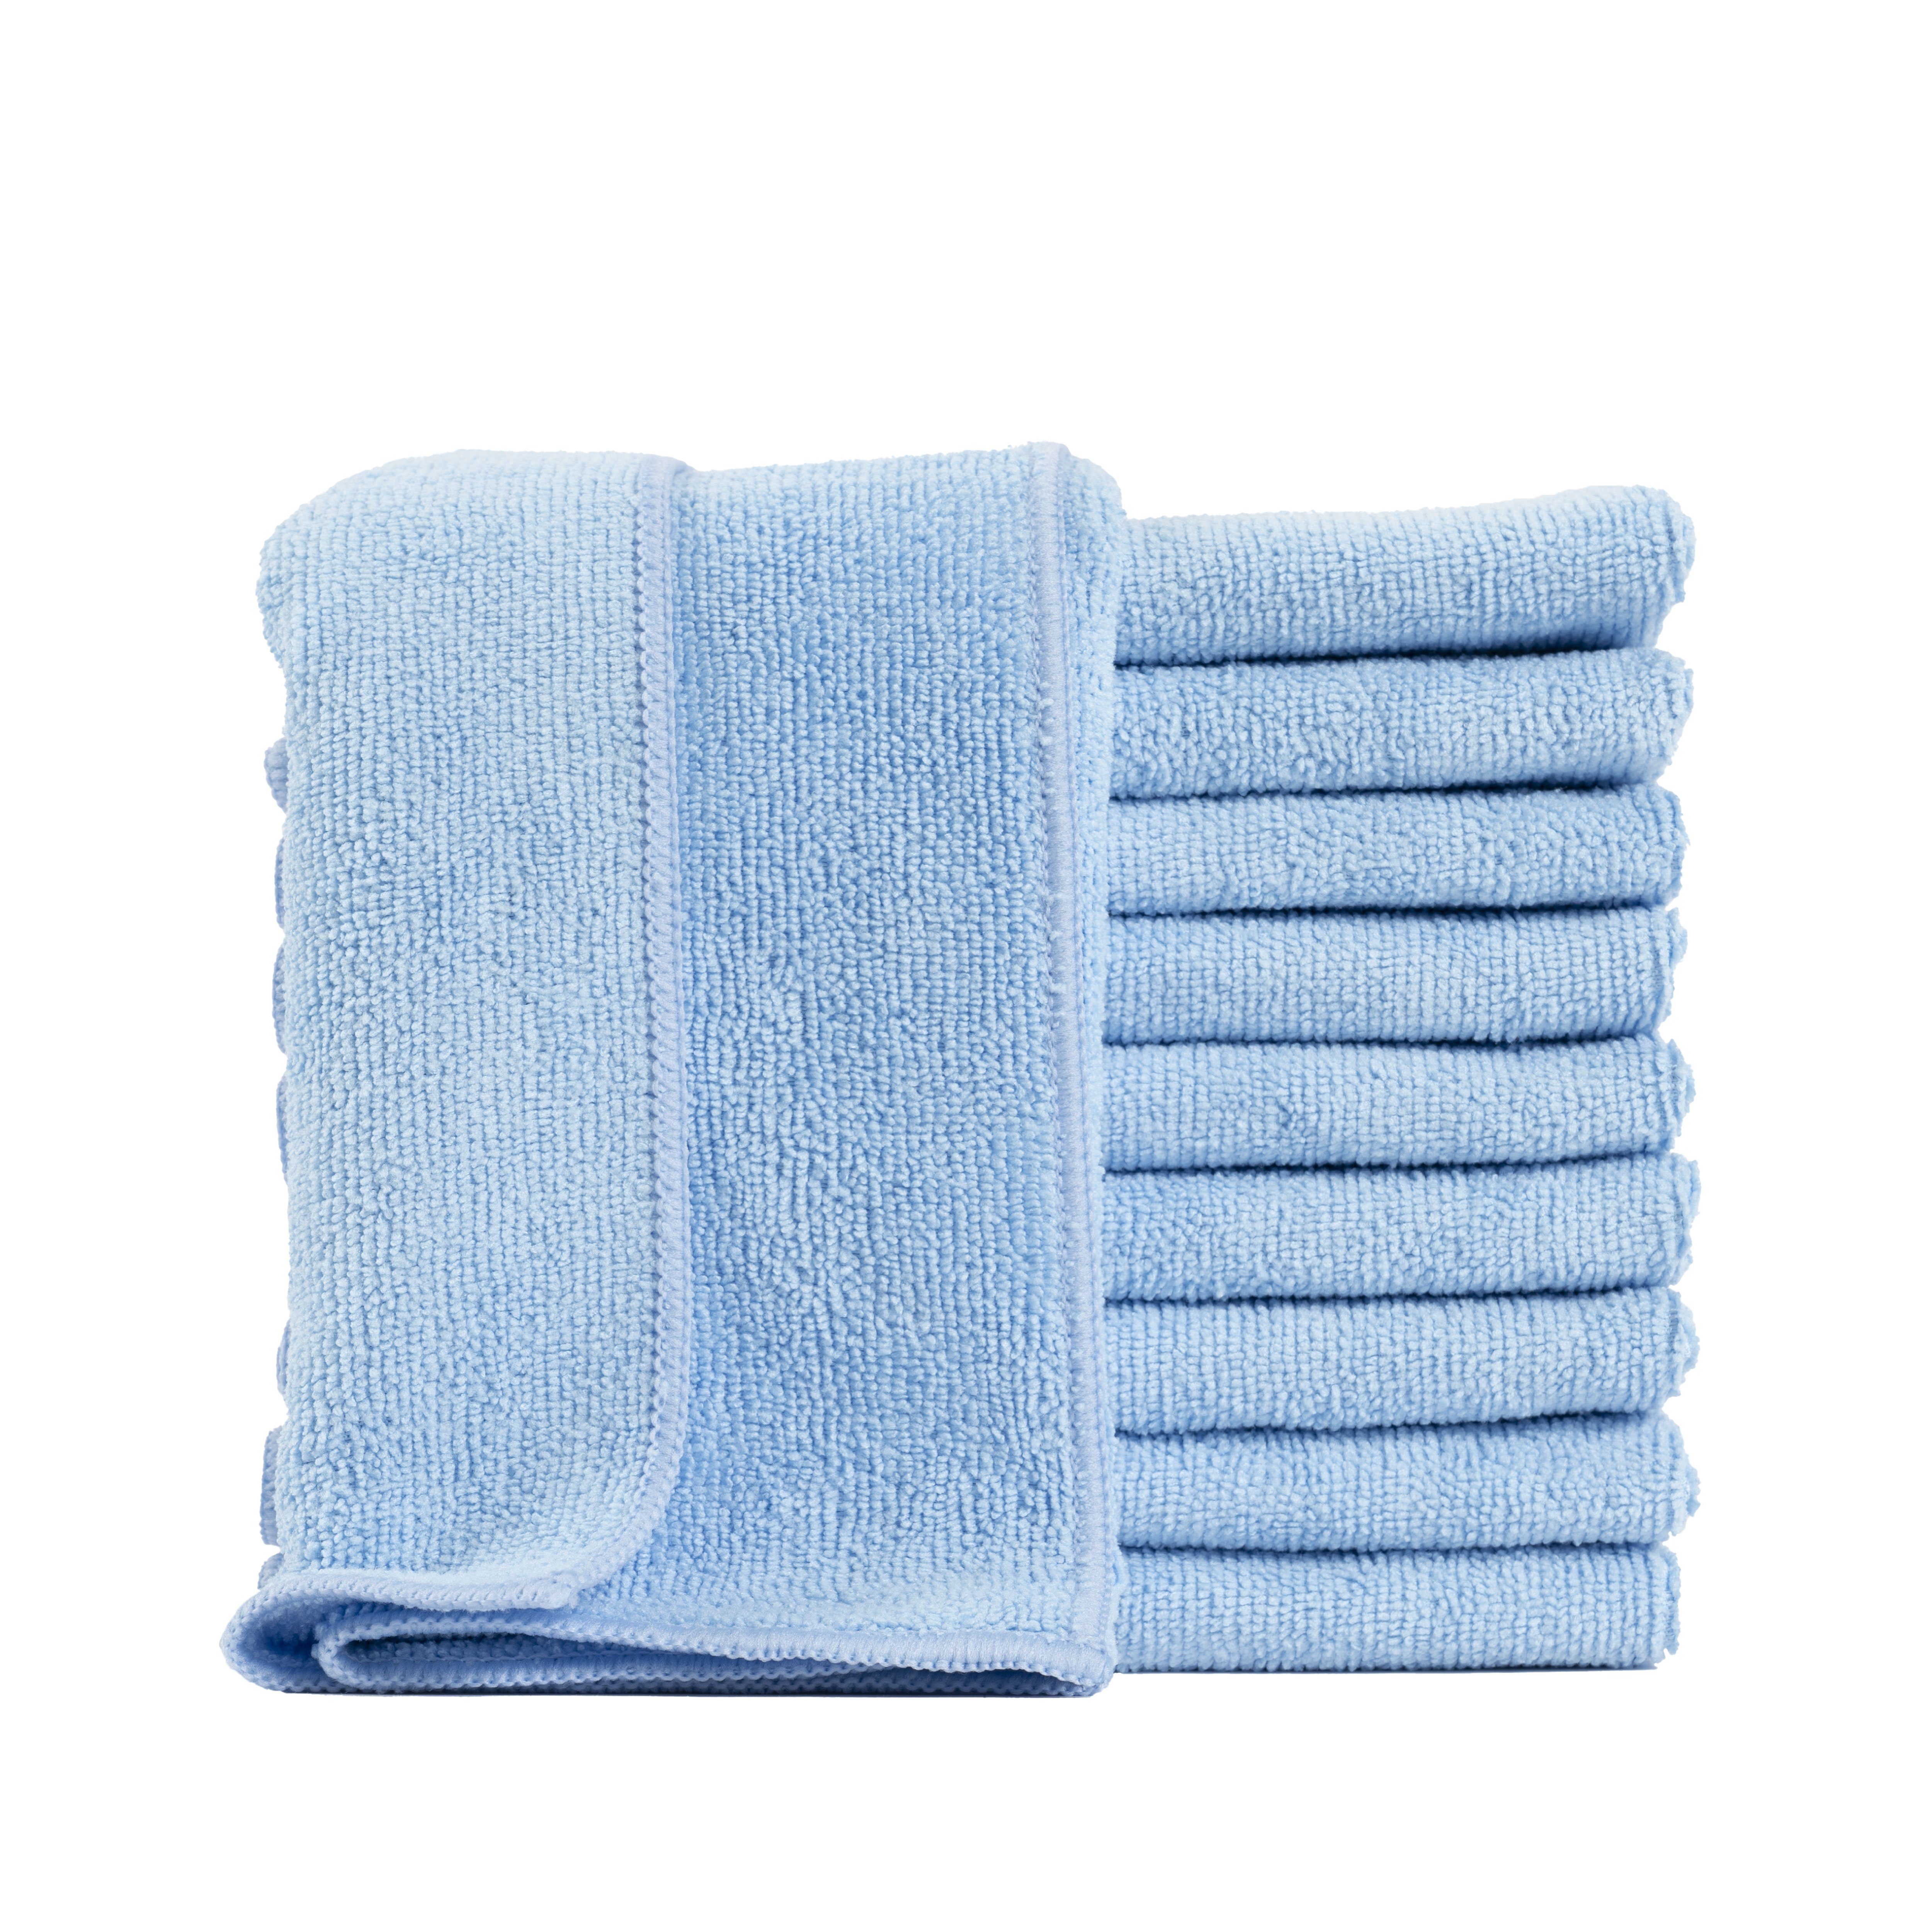 Preis und Auswahl an Hometex Premium Textiles für Staubtuch Küche Putztuch, 40 Mikrofaser Geschirrtuch Barista 40 x Blau cm, (10-tlg), Reinigungstuch und Ideal Autopflege